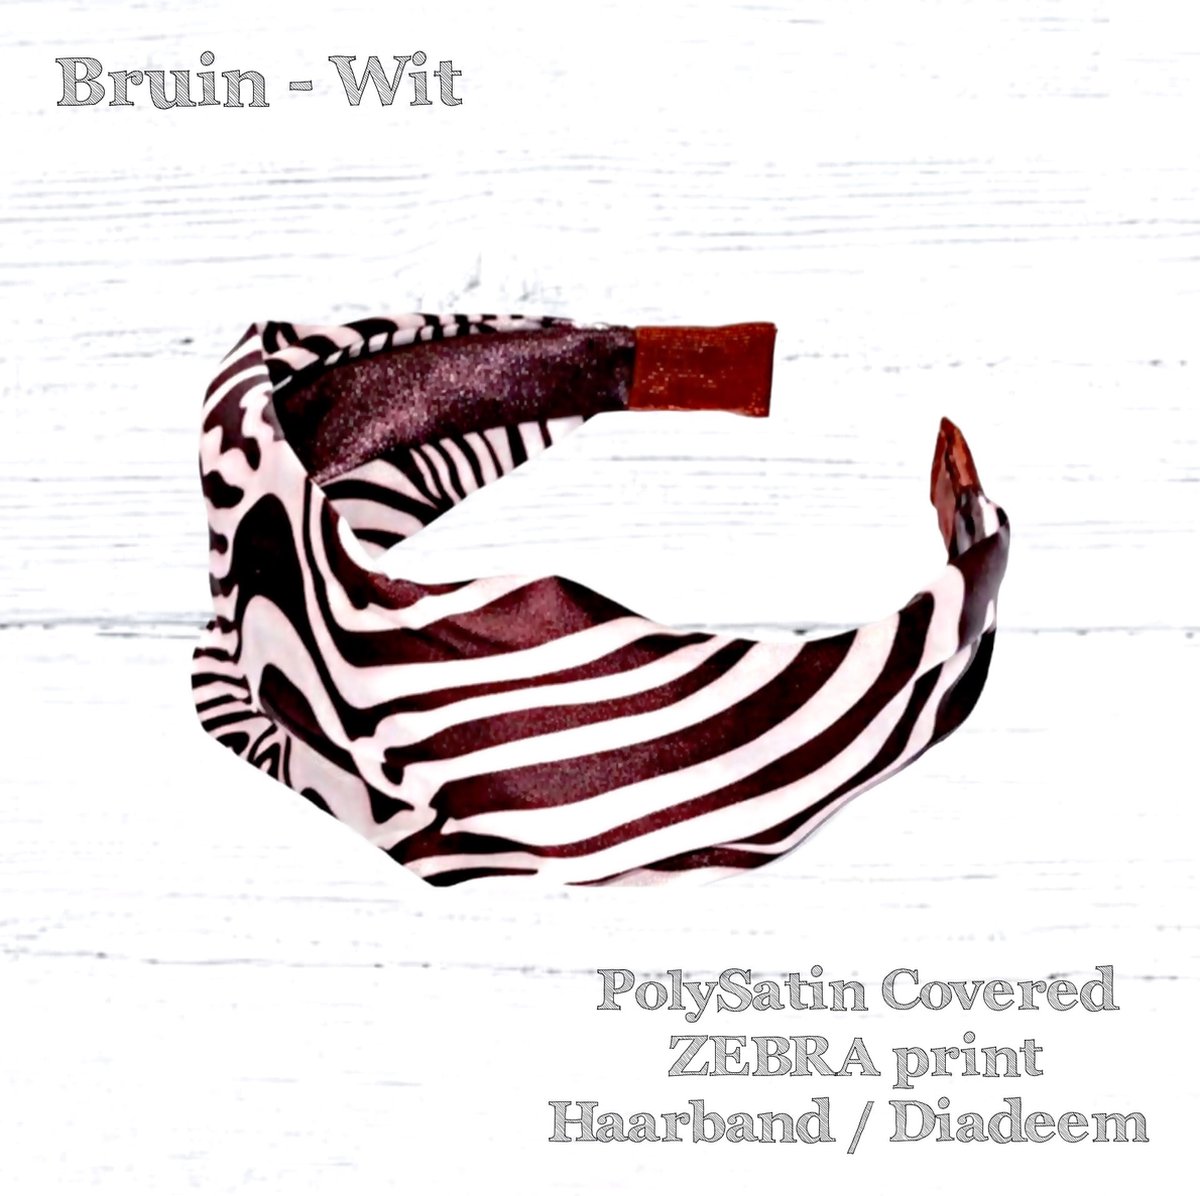 Haarband Diadeem – Dierenprint - Zebra Print stoffen Cover - Bruin Wit - 1 stuks - Volwassenen Tieners - Kinderen - Casual - Carnaval - Zomerfeesten – Themafeest